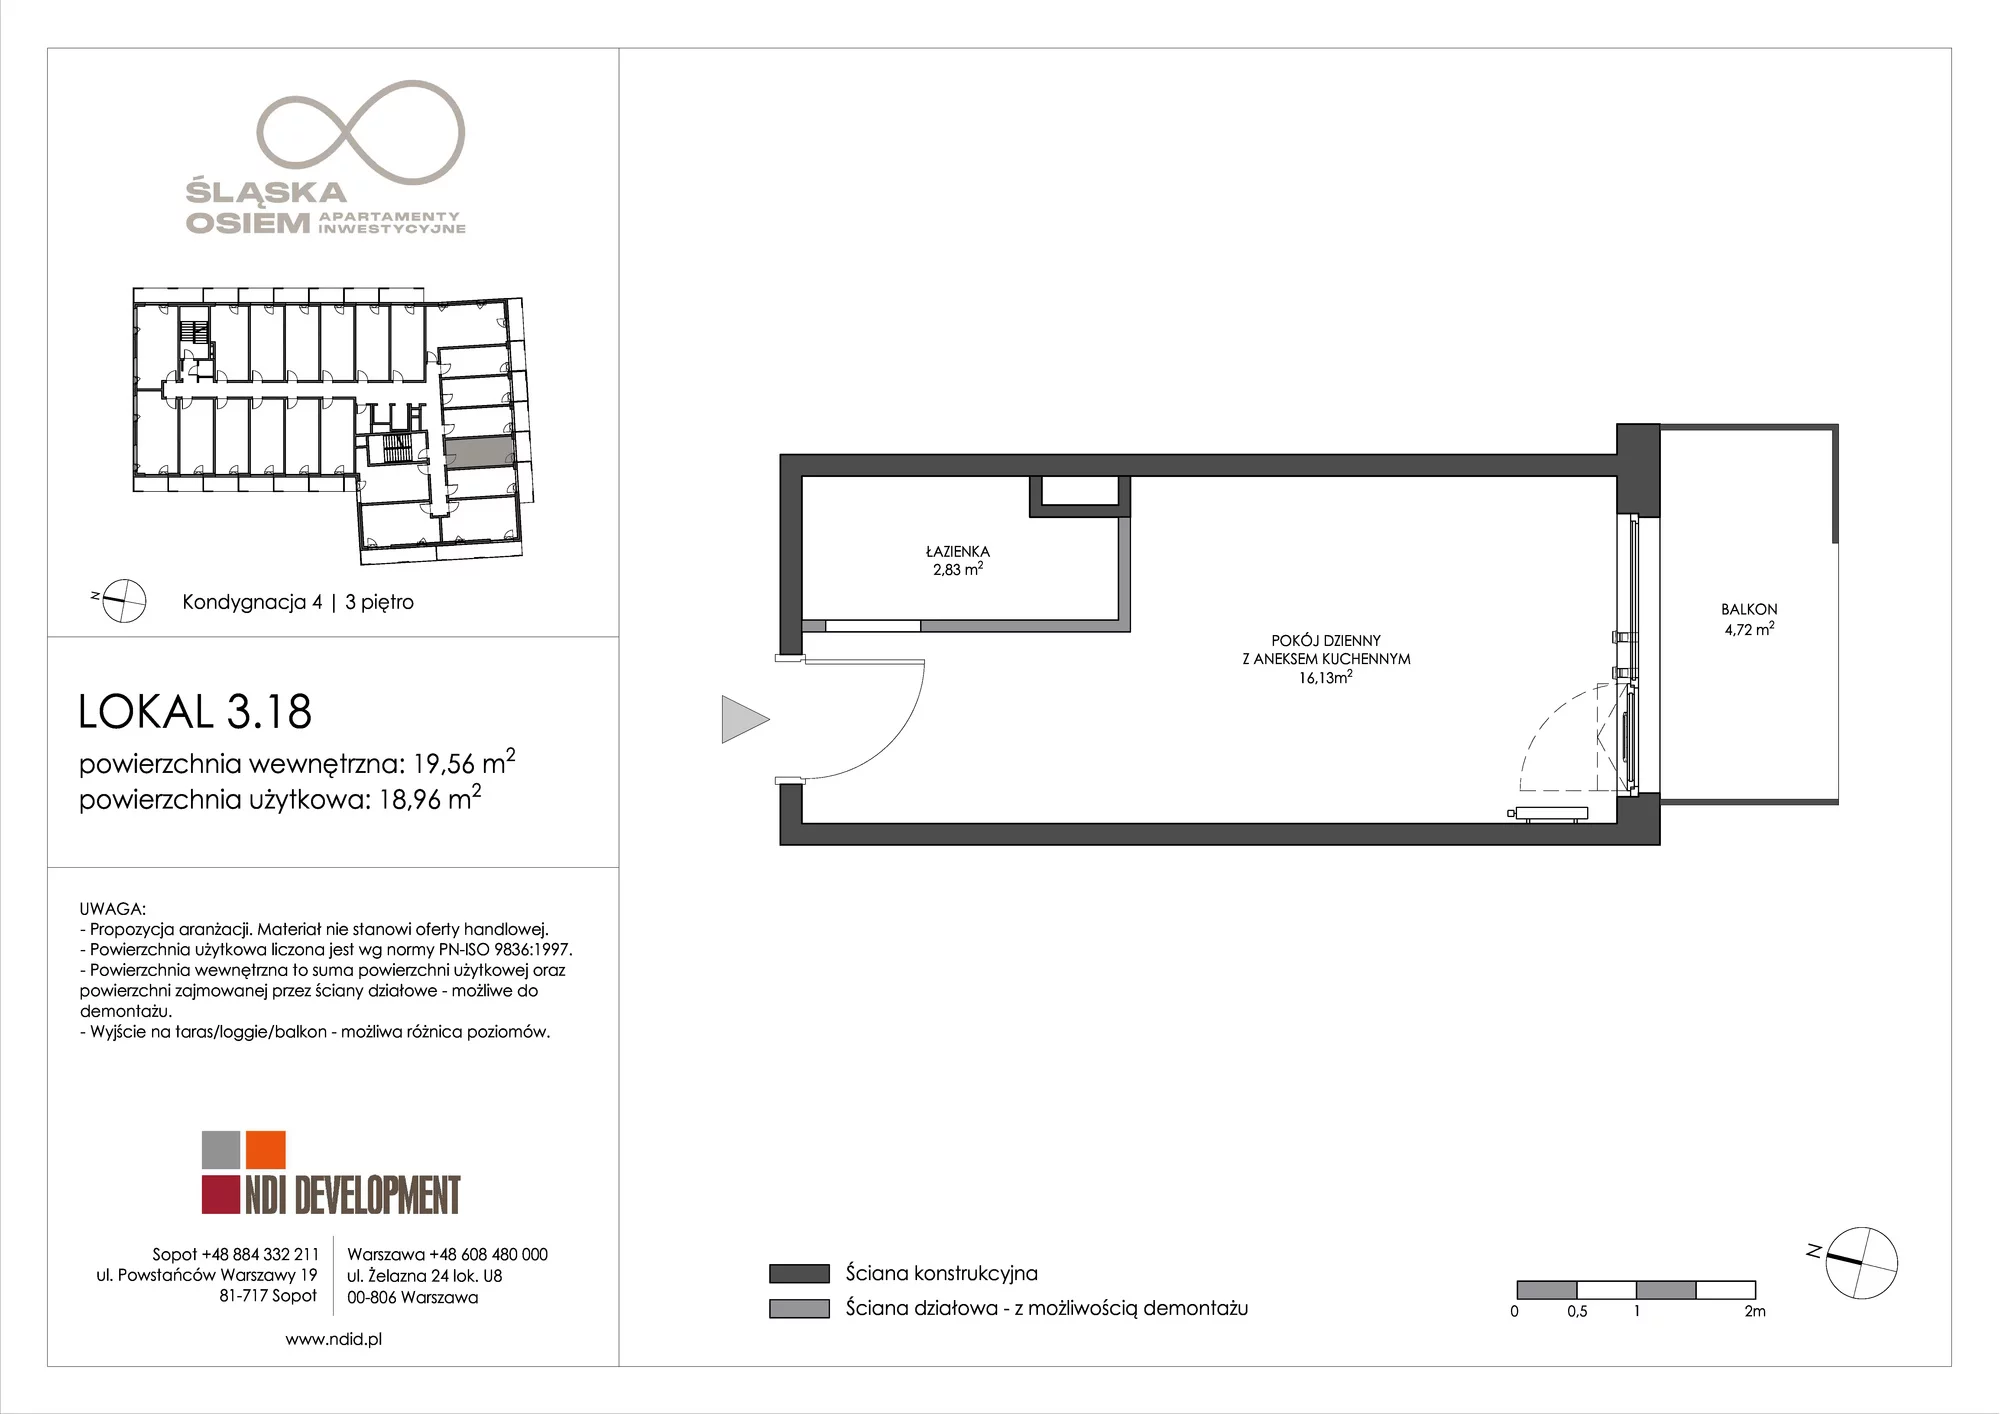 Apartament inwestycyjny 19,56 m², piętro 3, oferta nr 3.18, Śląska Osiem, Gdańsk, Przymorze, ul. Śląska 8